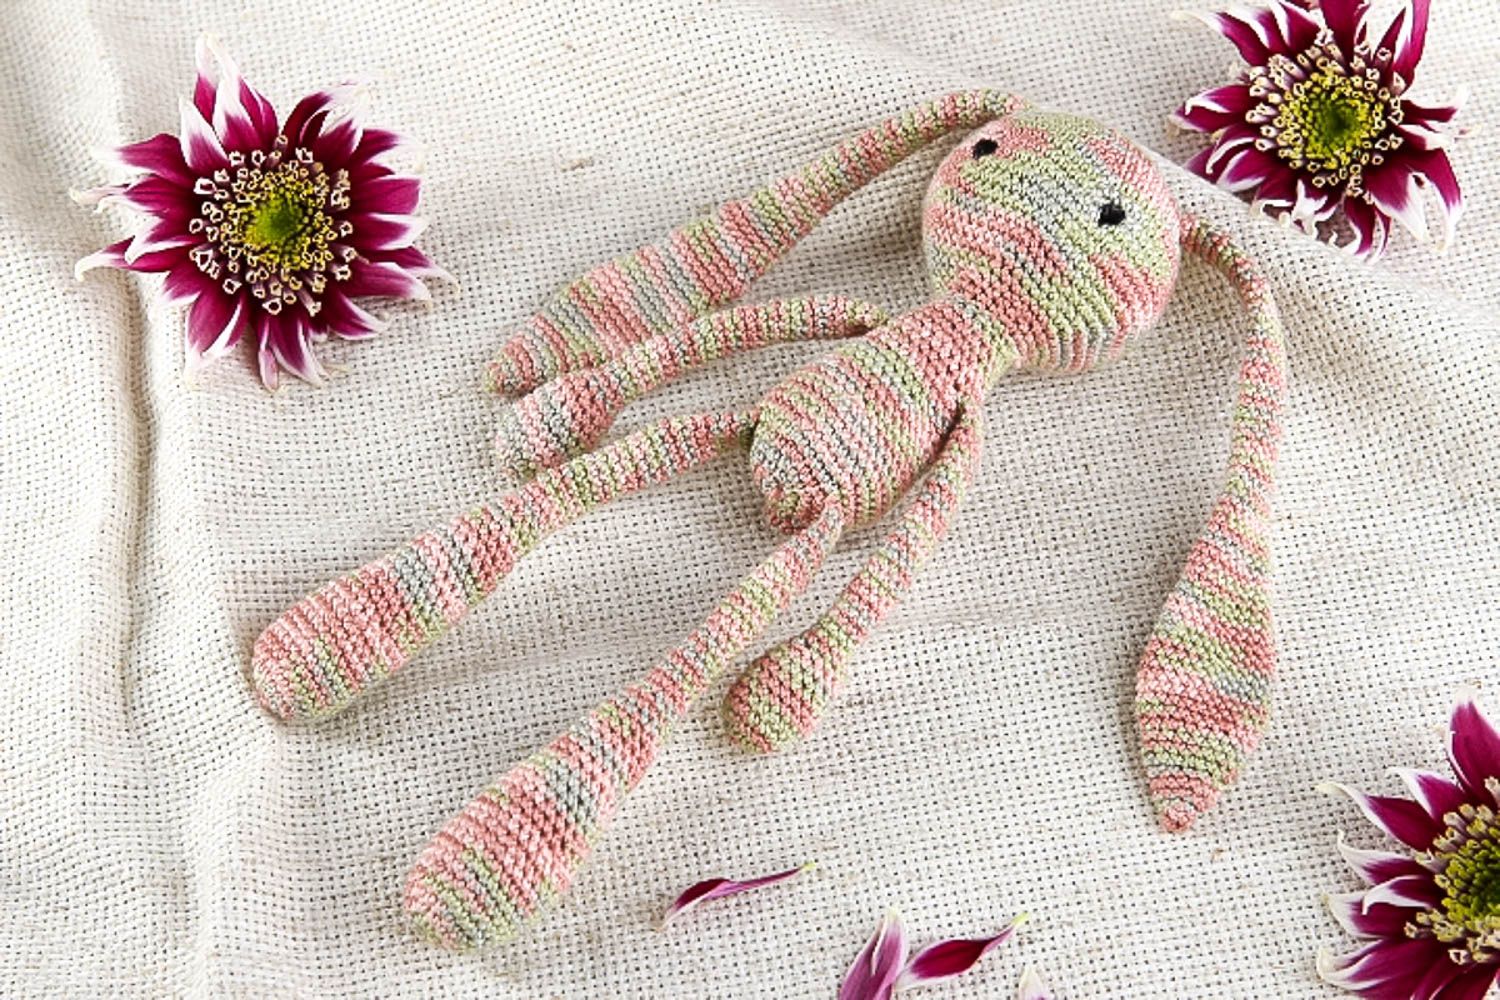 Interior soft toy handmade toys crocheted toys for babies nursery decor ideas photo 1